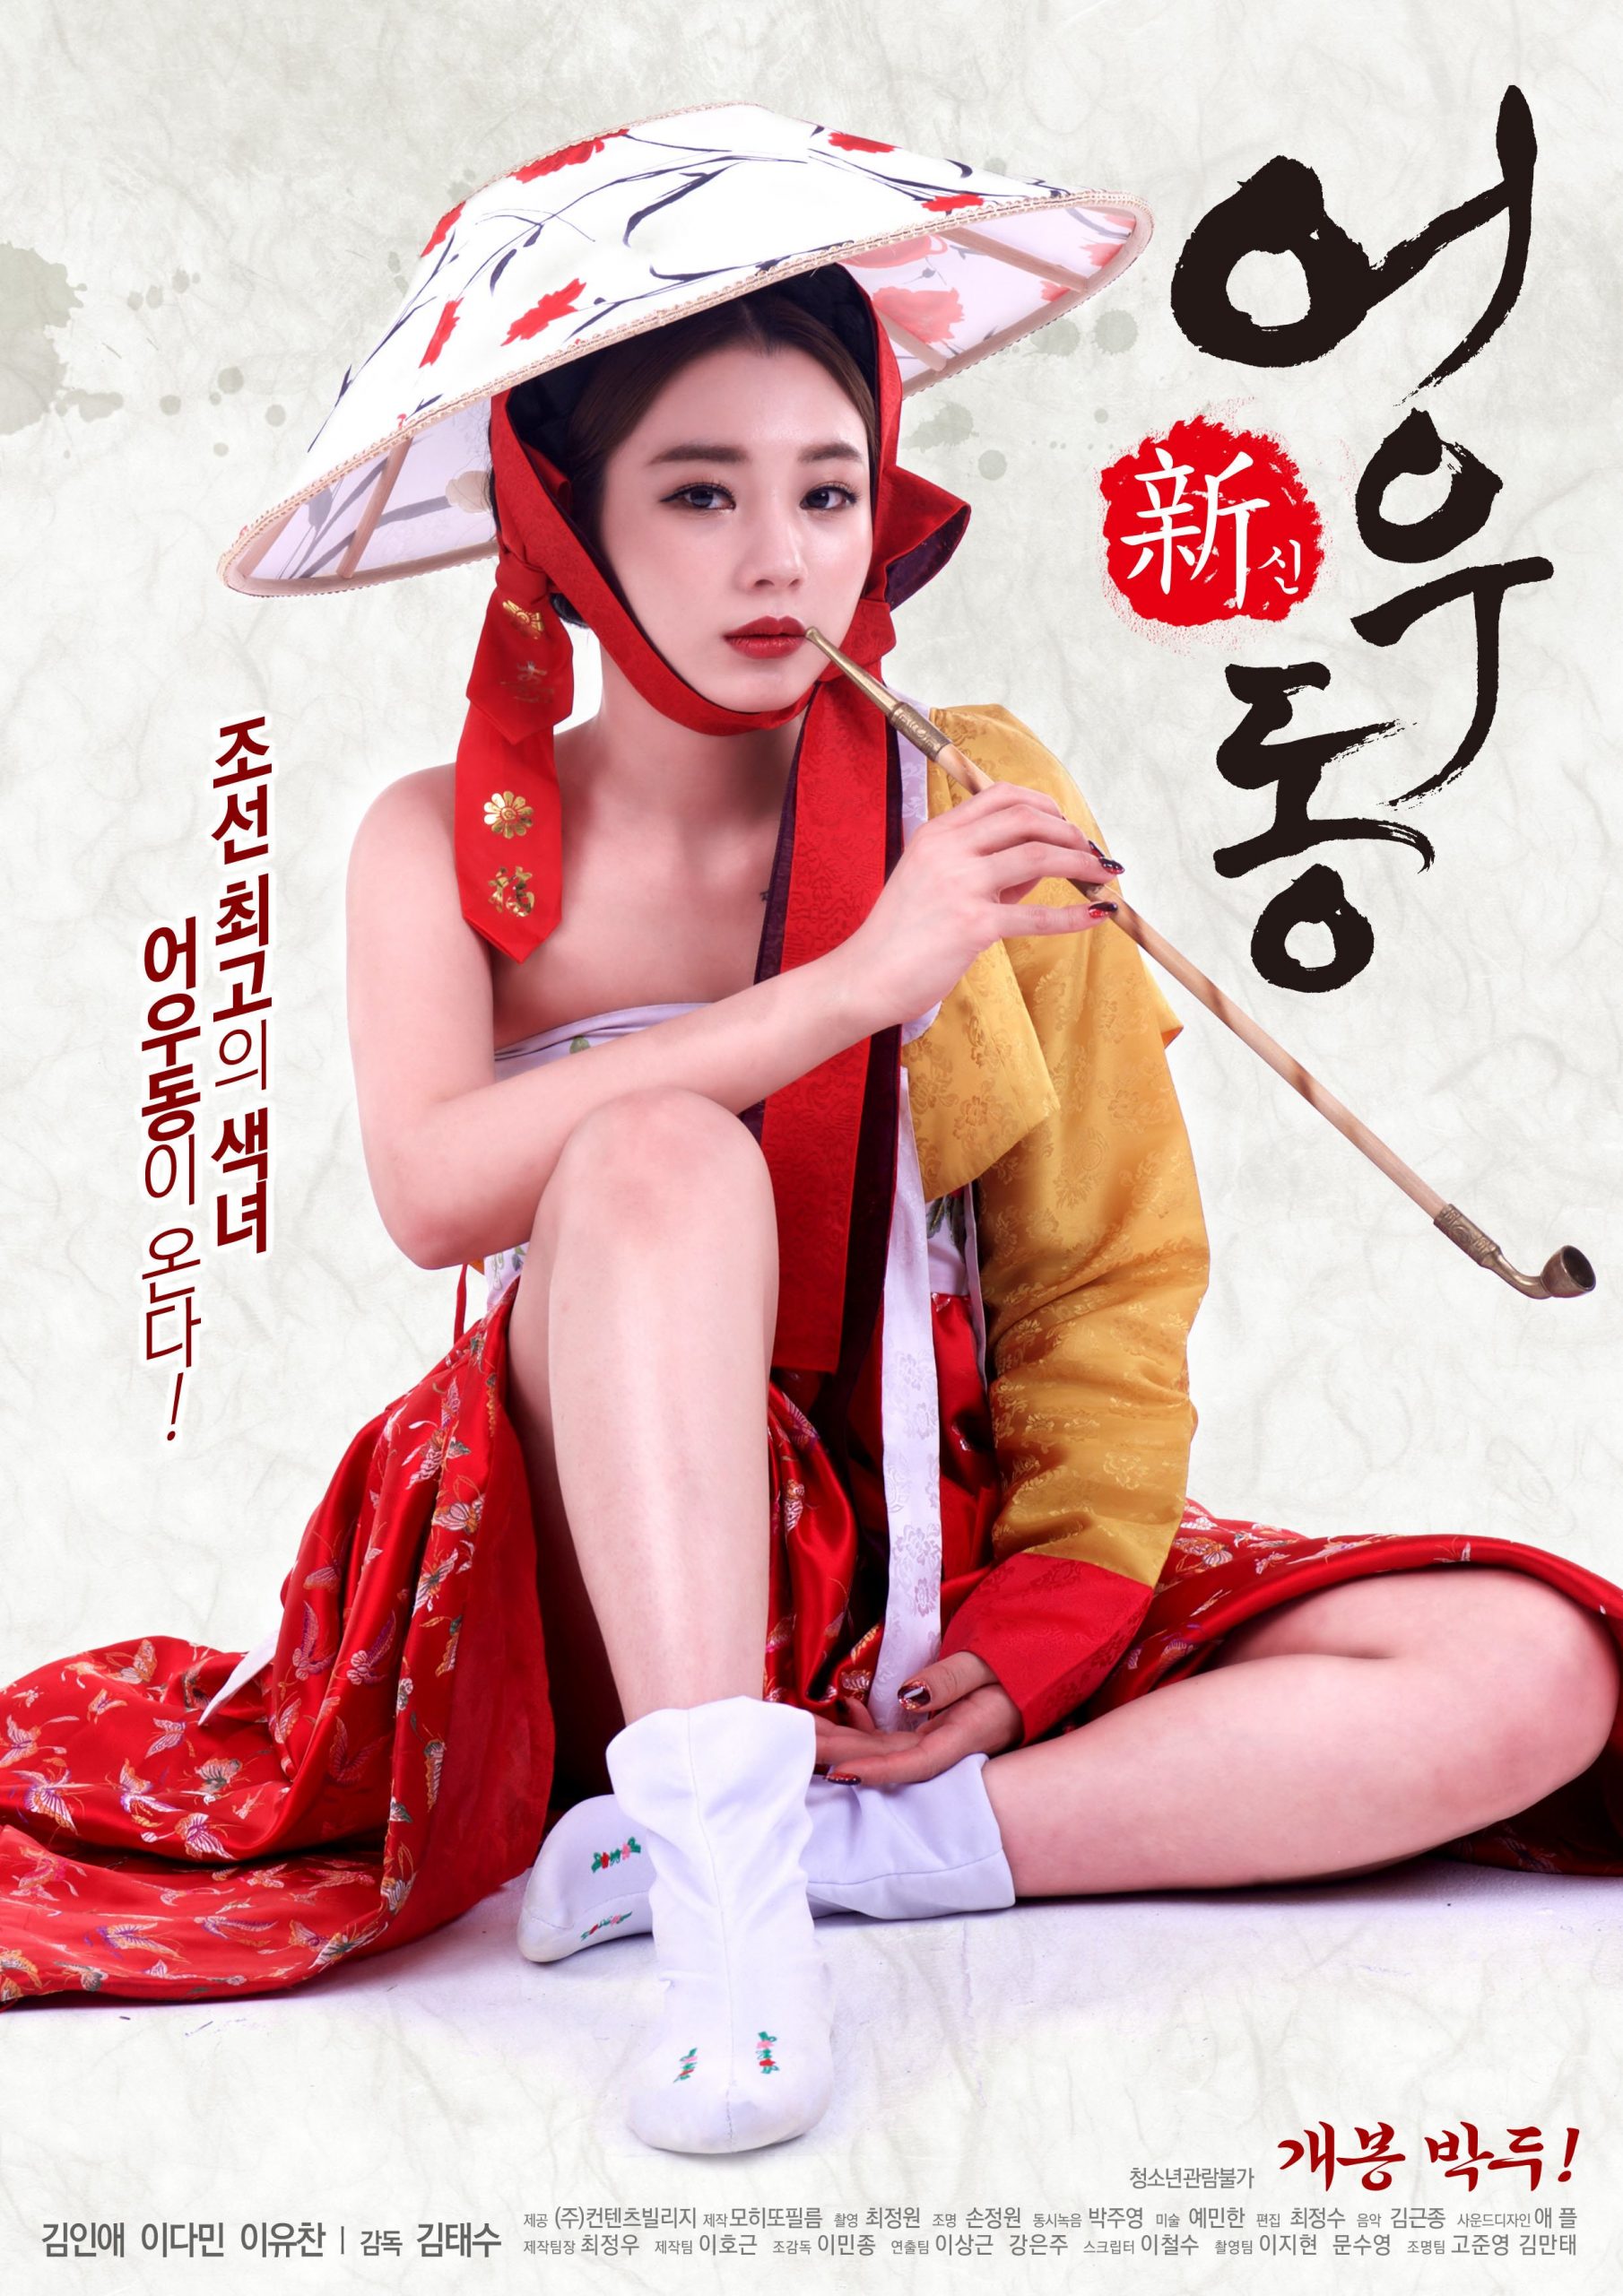 ดูหนังอาร์ K Movie18+ เย็ดจริงแต่ต้องเซ็นเซอร์ให้นักแสดงจากเรื่อง Goddess Eowoodong (2017) นางวังใช้หีแลกตำแหน่งมเหสี ฉากลามกxxxเจอเย็ดหีแหลกเลยจ้า